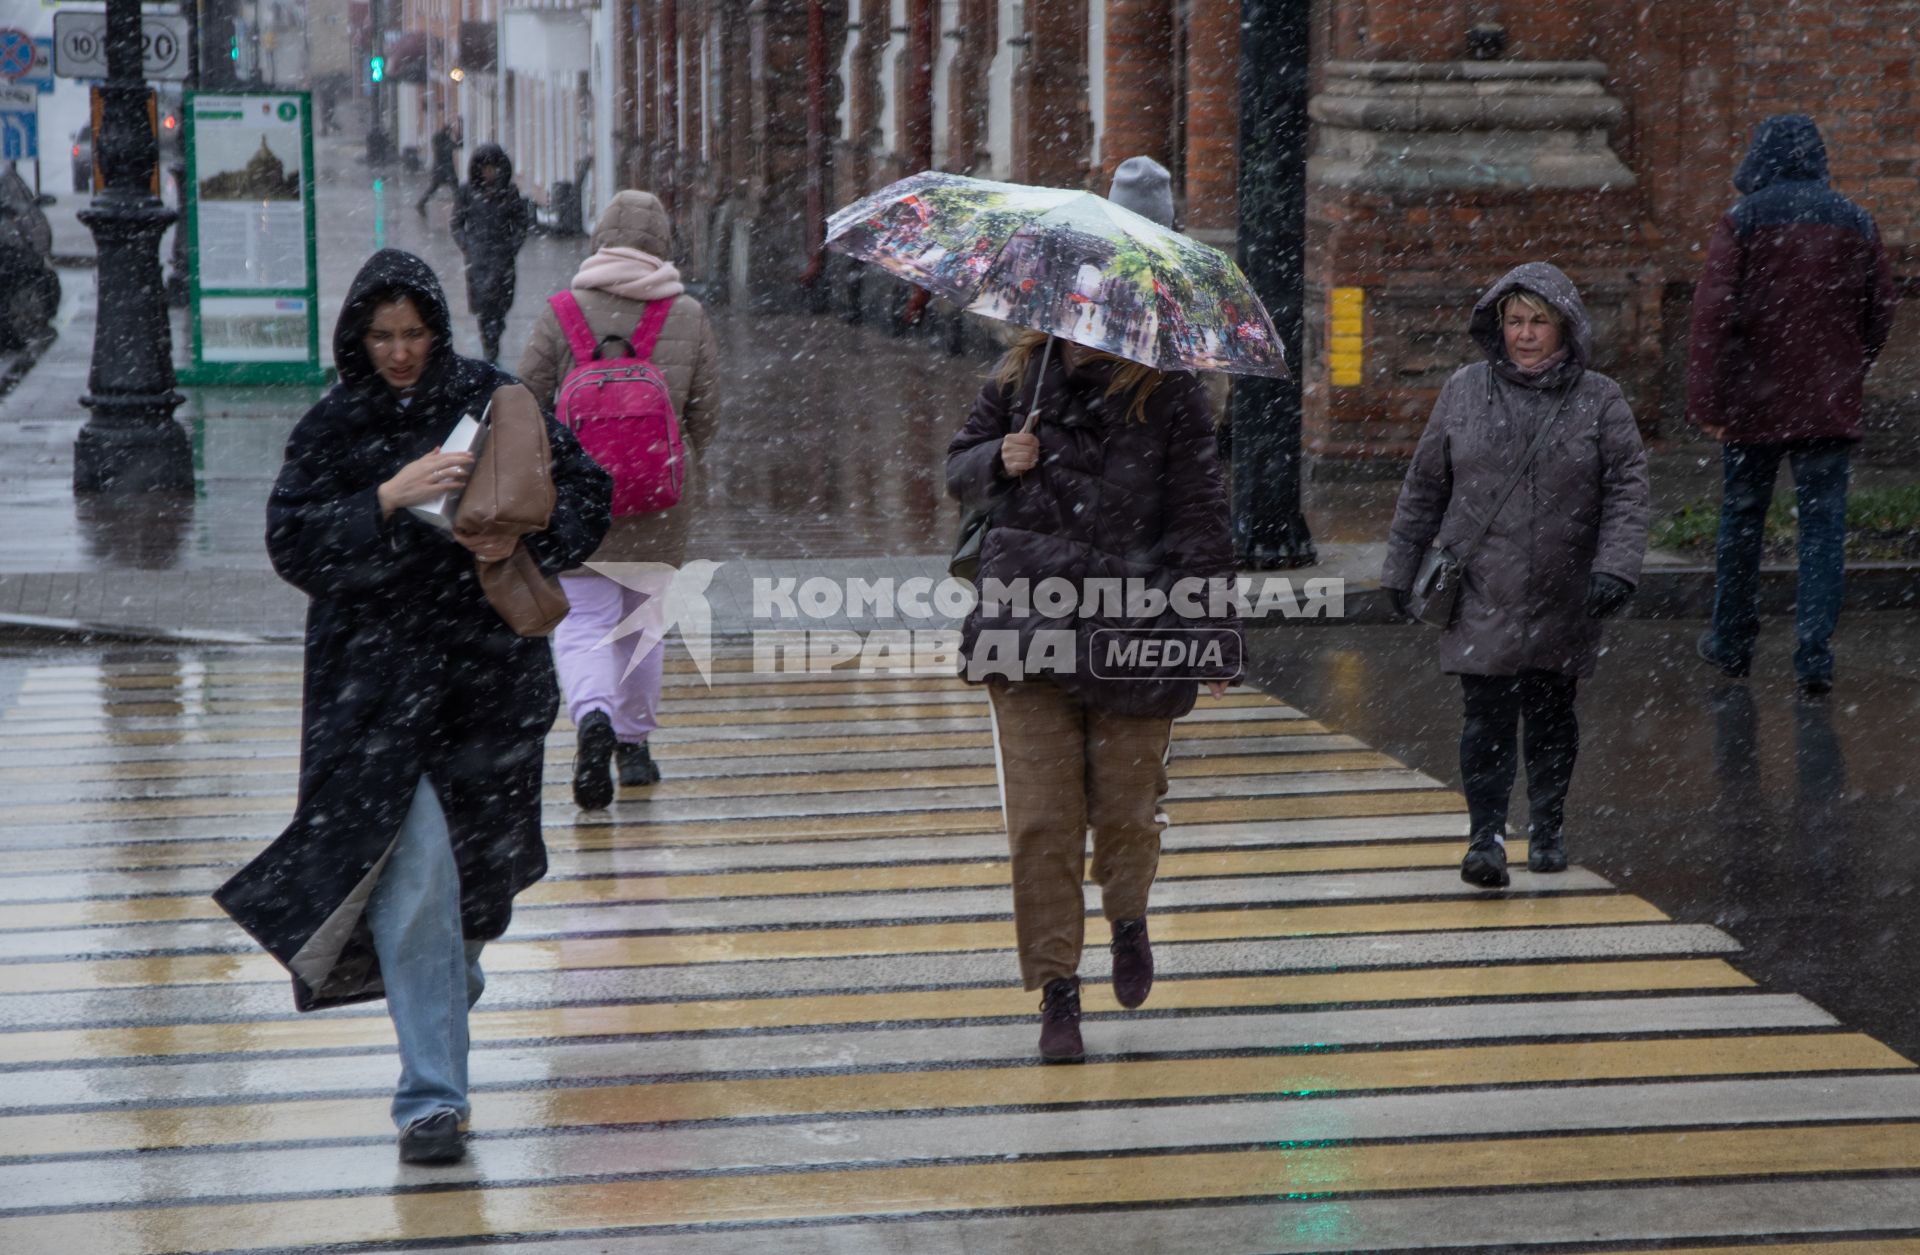 Пермь. Первый снег в городе. Люди переходят дорогу по пешеходному переходу.